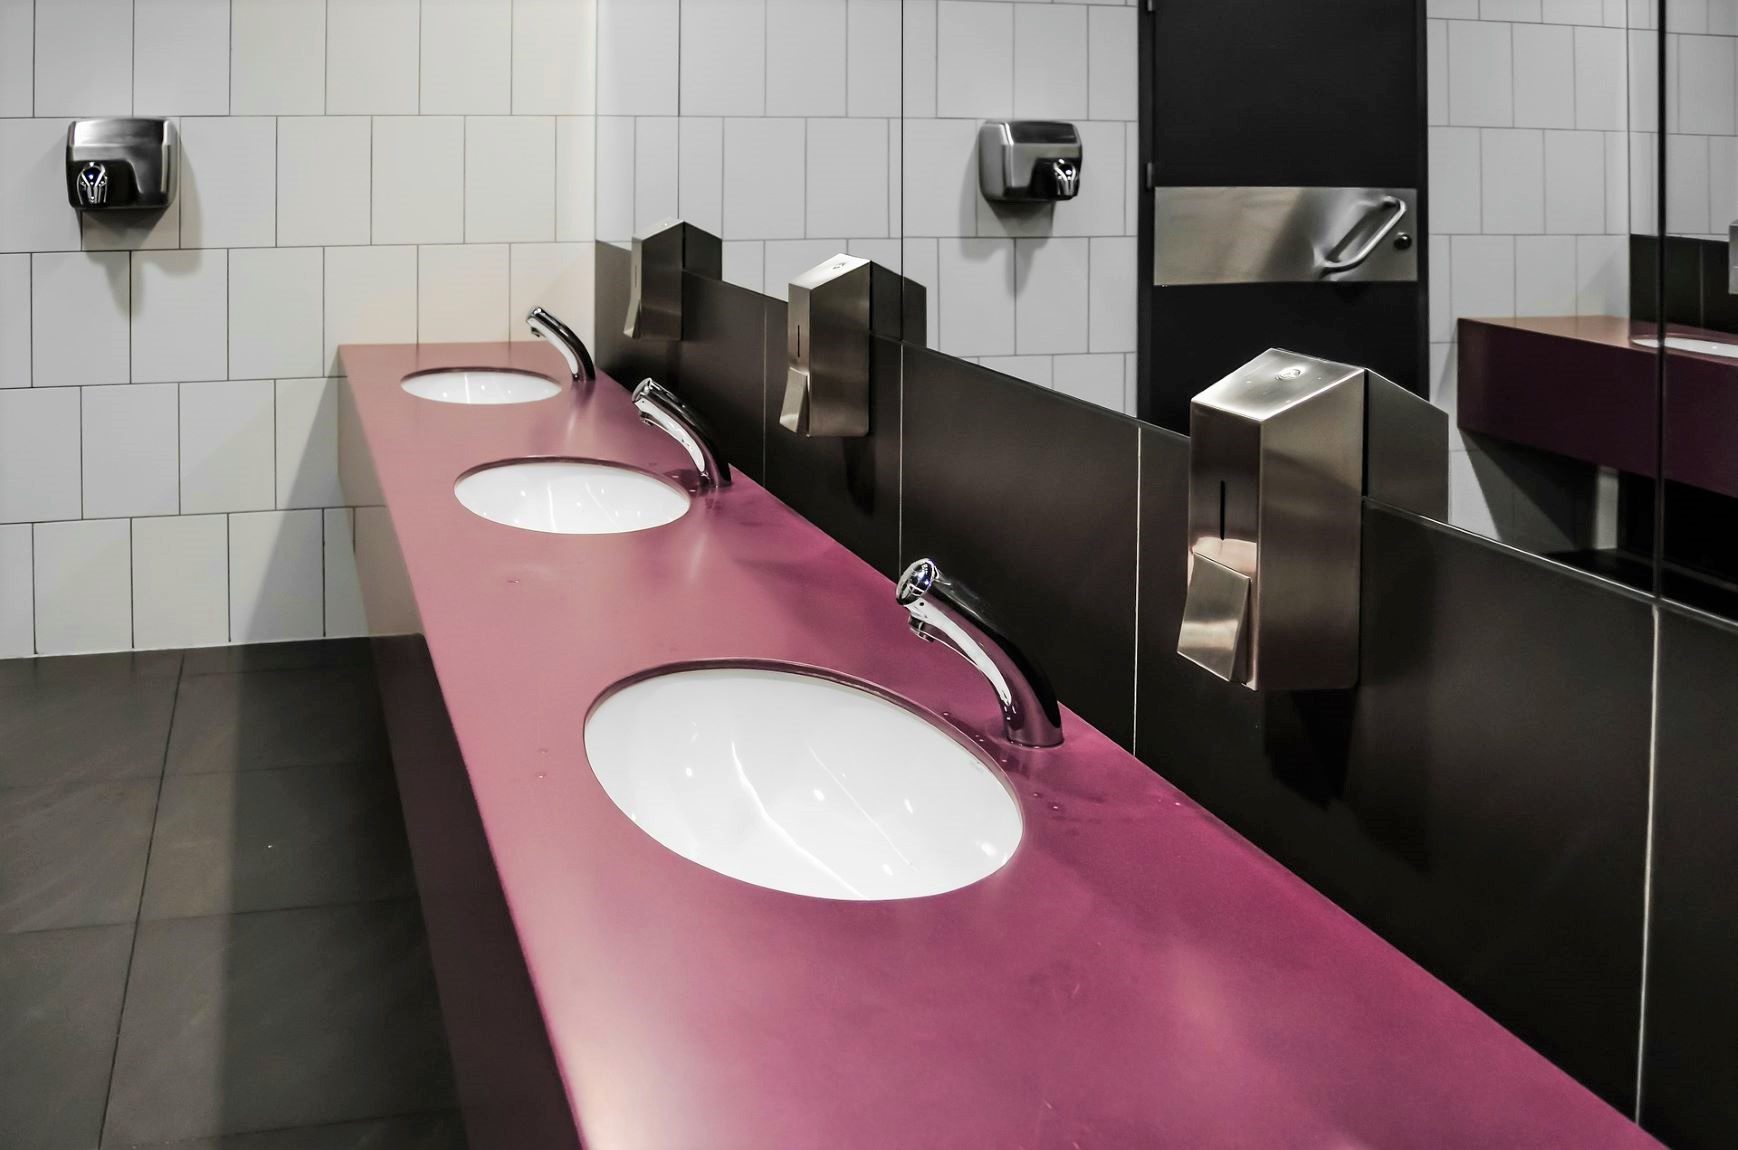 Wasgelegenheid in toiletten - Foto: Jarmoluk (Pixabay)